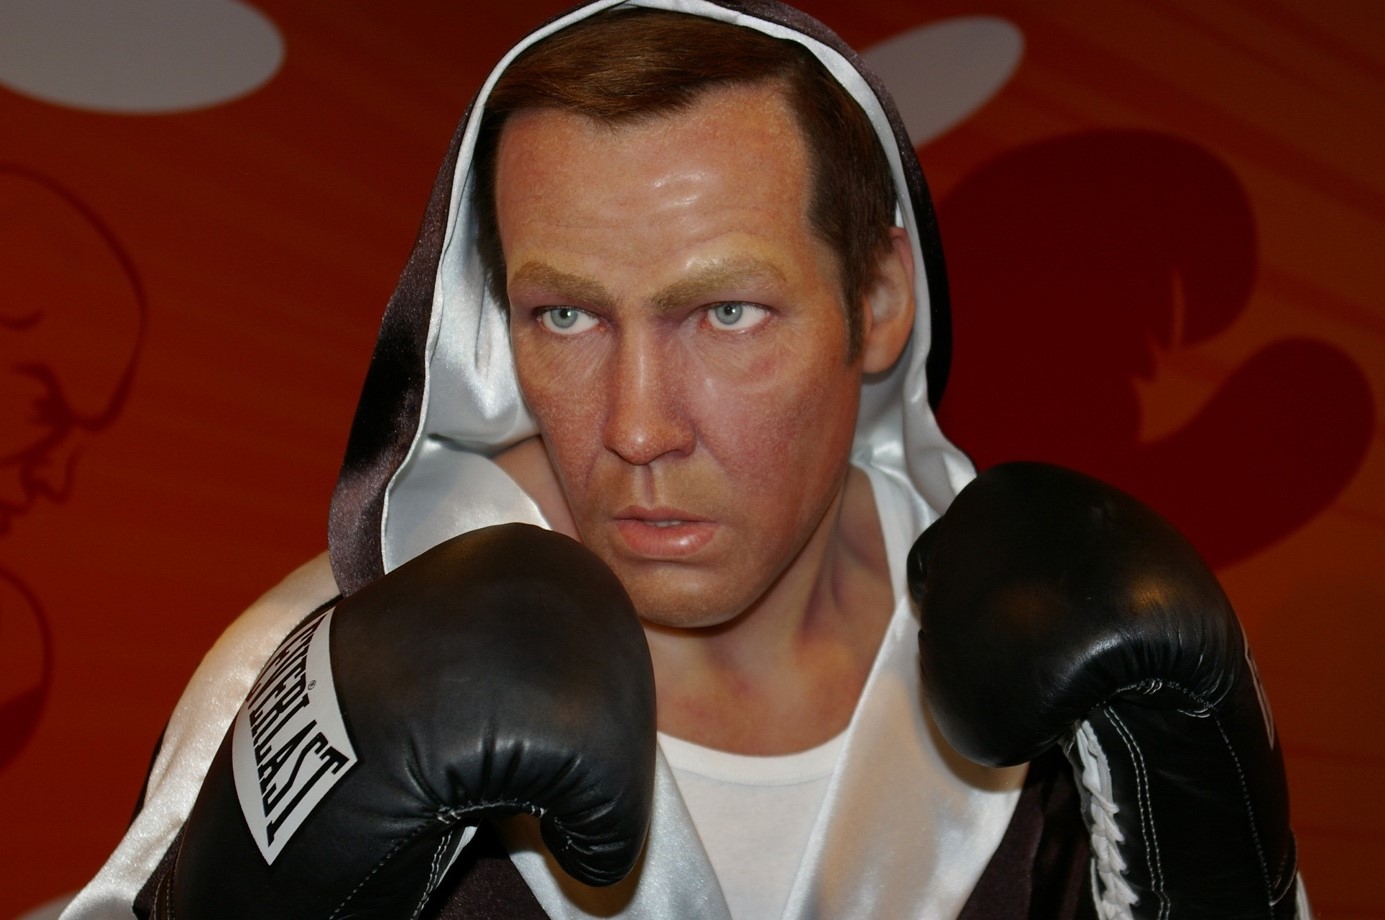 Henry Maske gehört, neben den Klitschko-Brüdern, zu den bekanntesten Boxern der 1990er-Jahre. Seine Wachsfigur ist im Berliner Madame Tussaud’s zu besichtigen.